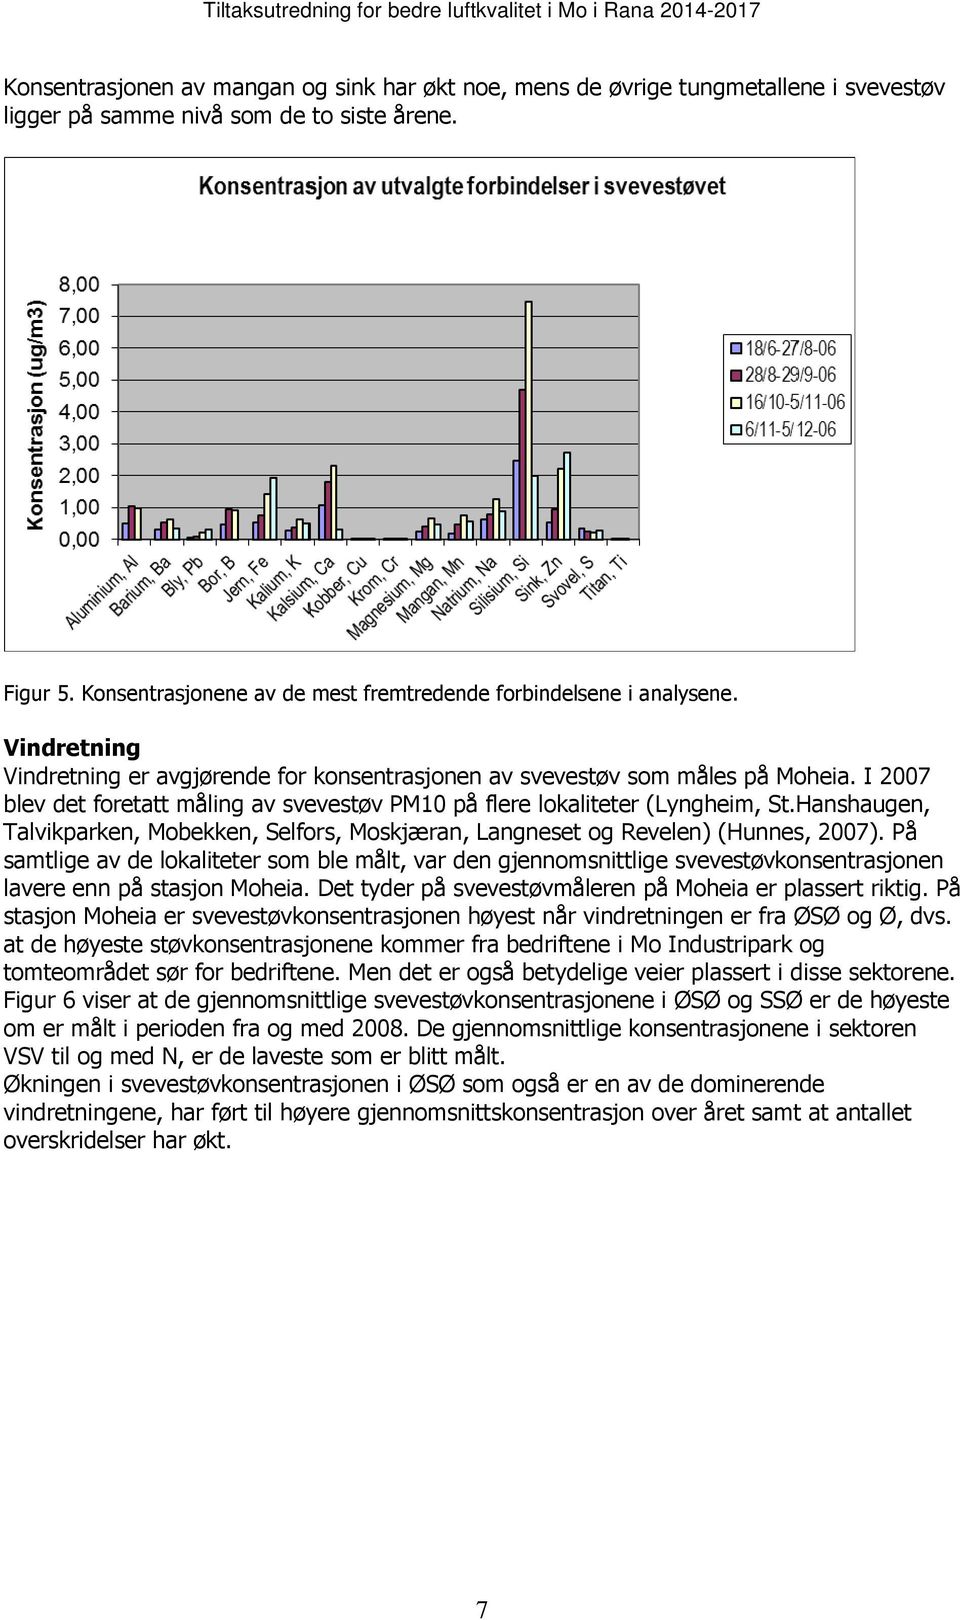 I 2007 blev det foretatt måling av svevestøv PM10 på flere lokaliteter (Lyngheim, St.Hanshaugen, Talvikparken, Mobekken, Selfors, Moskjæran, Langneset og Revelen) (Hunnes, 2007).